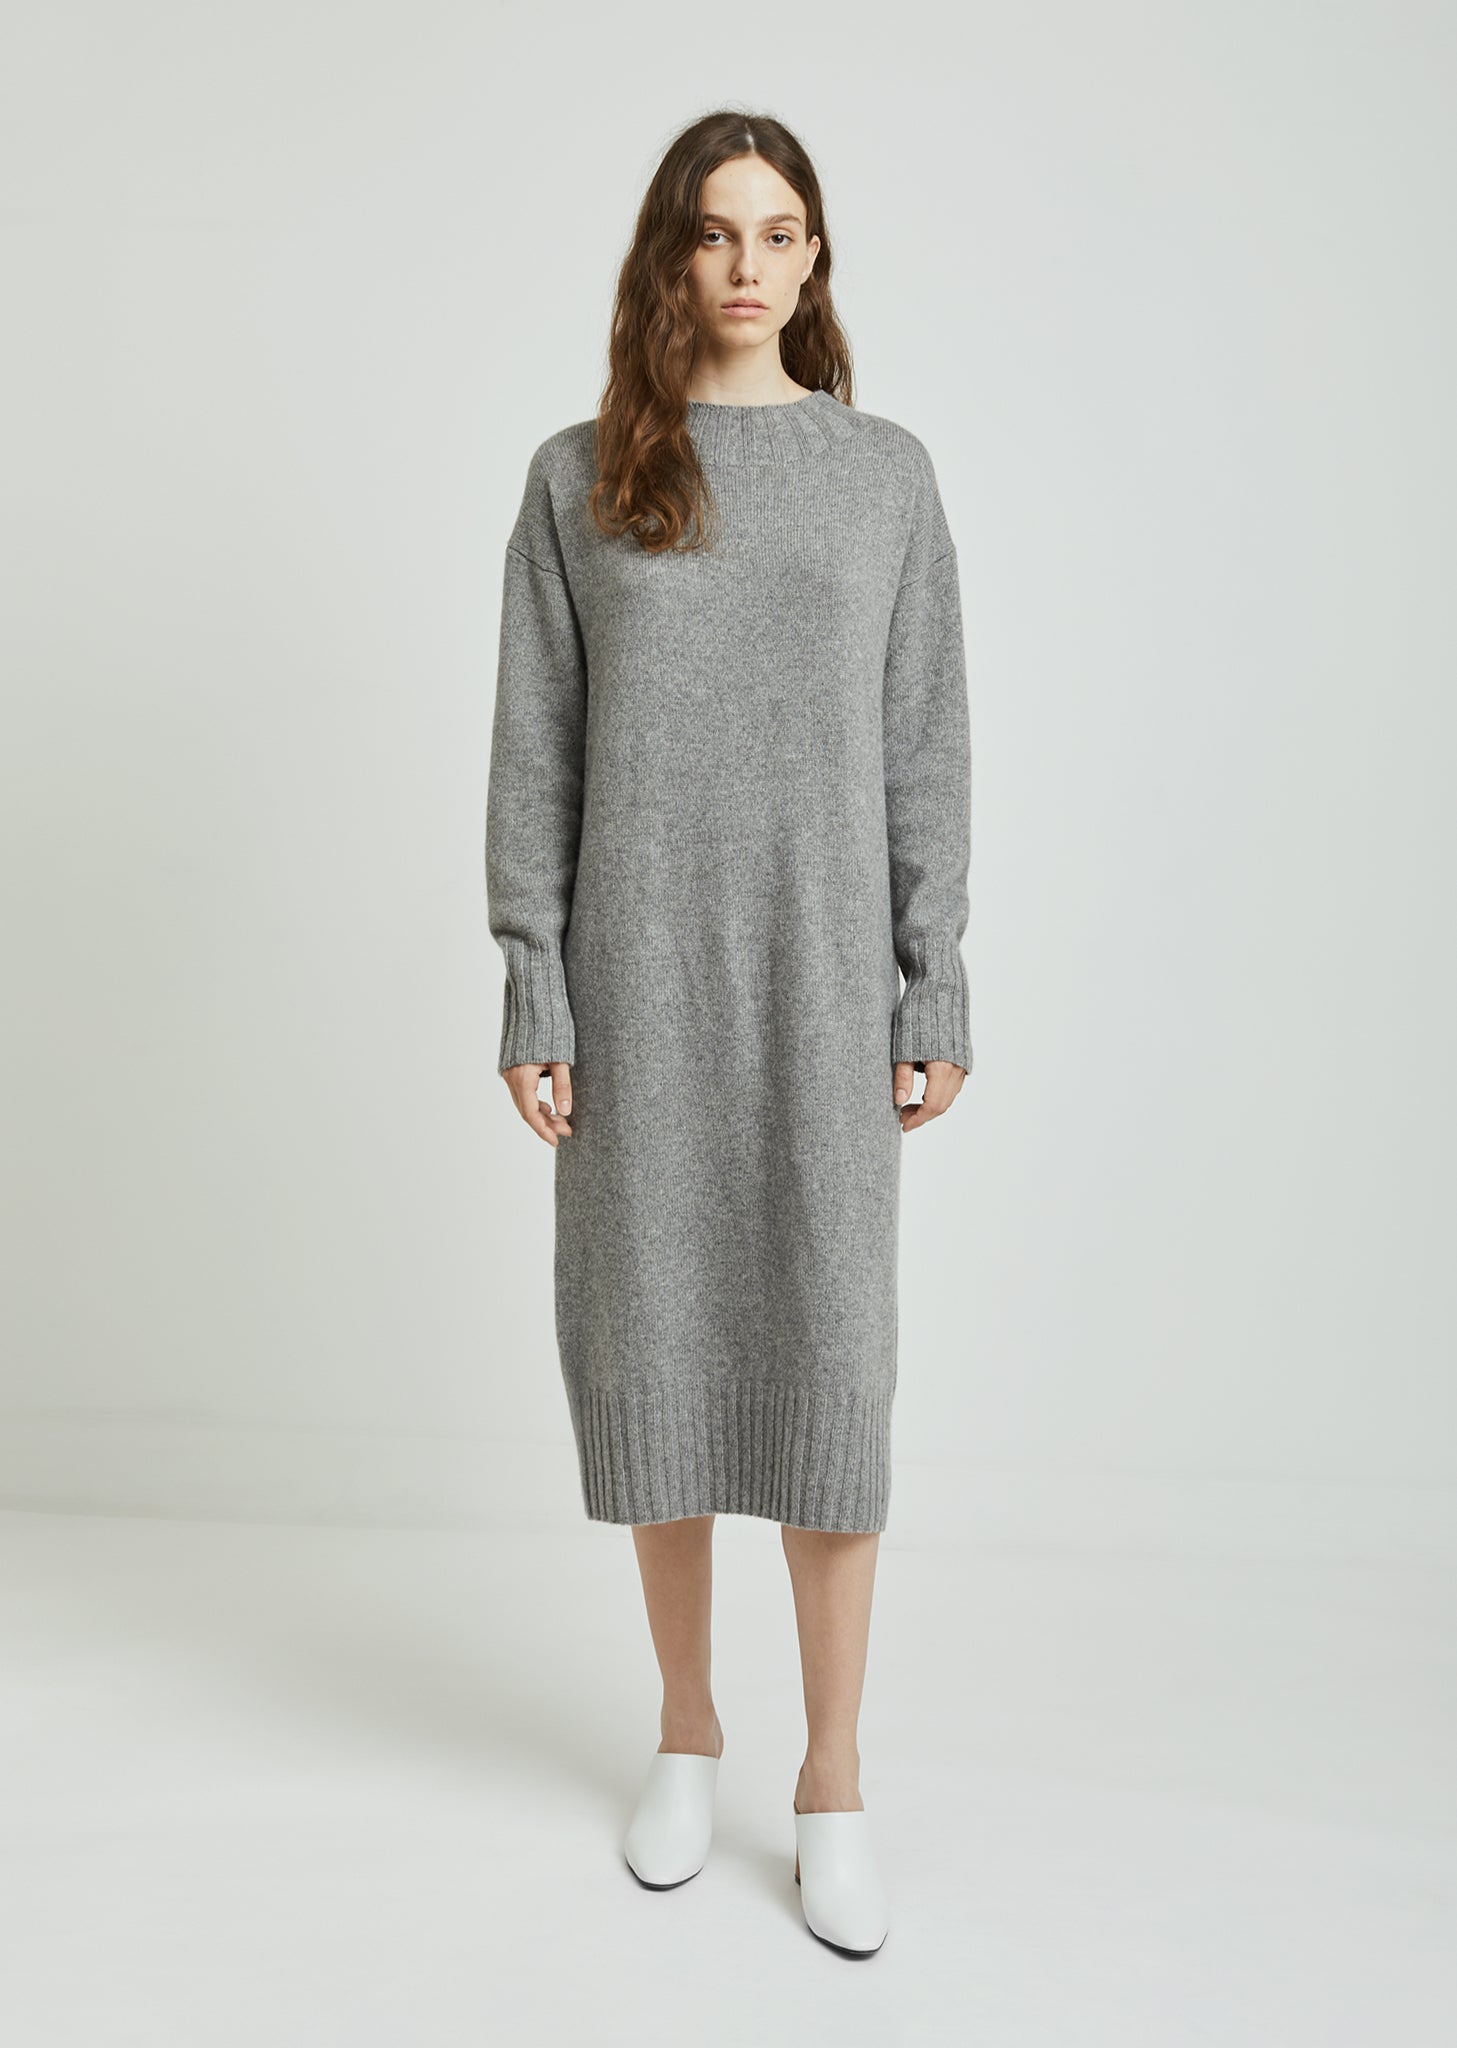 Samia Plaid Sweater Dress | Plaid sweater dress, Plaid sweater, Sweater  dress